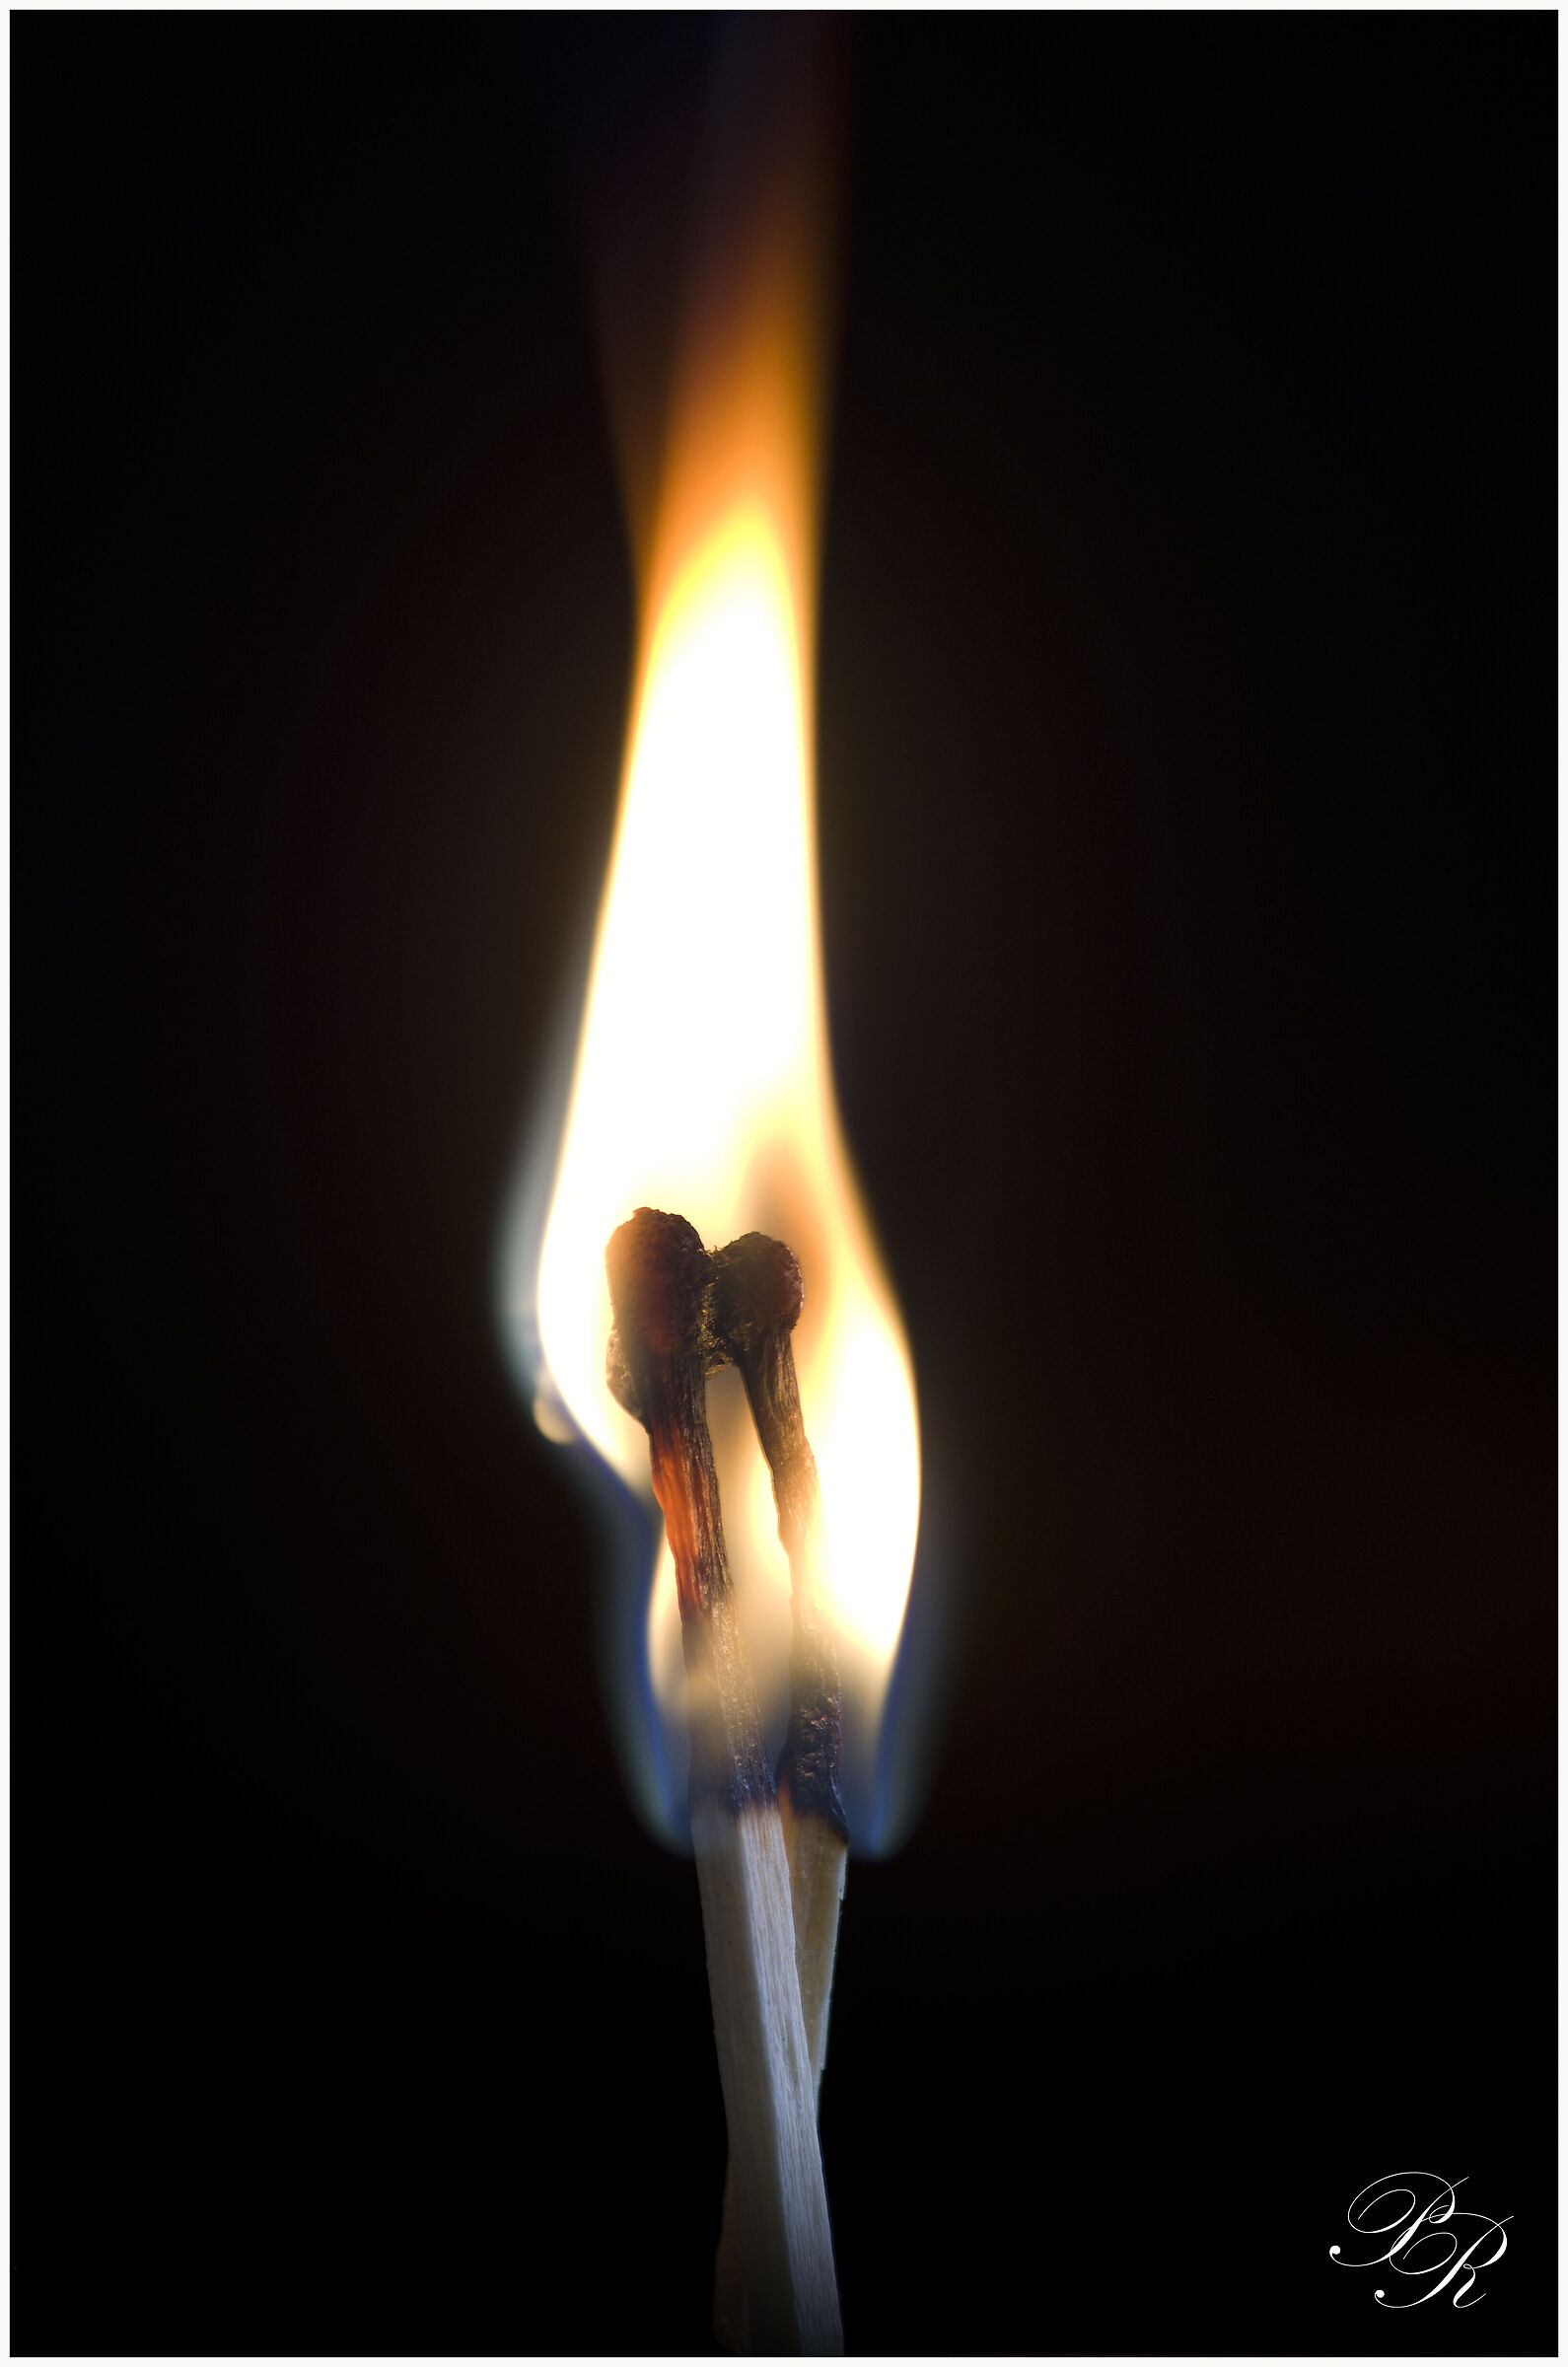 Burning Passion...